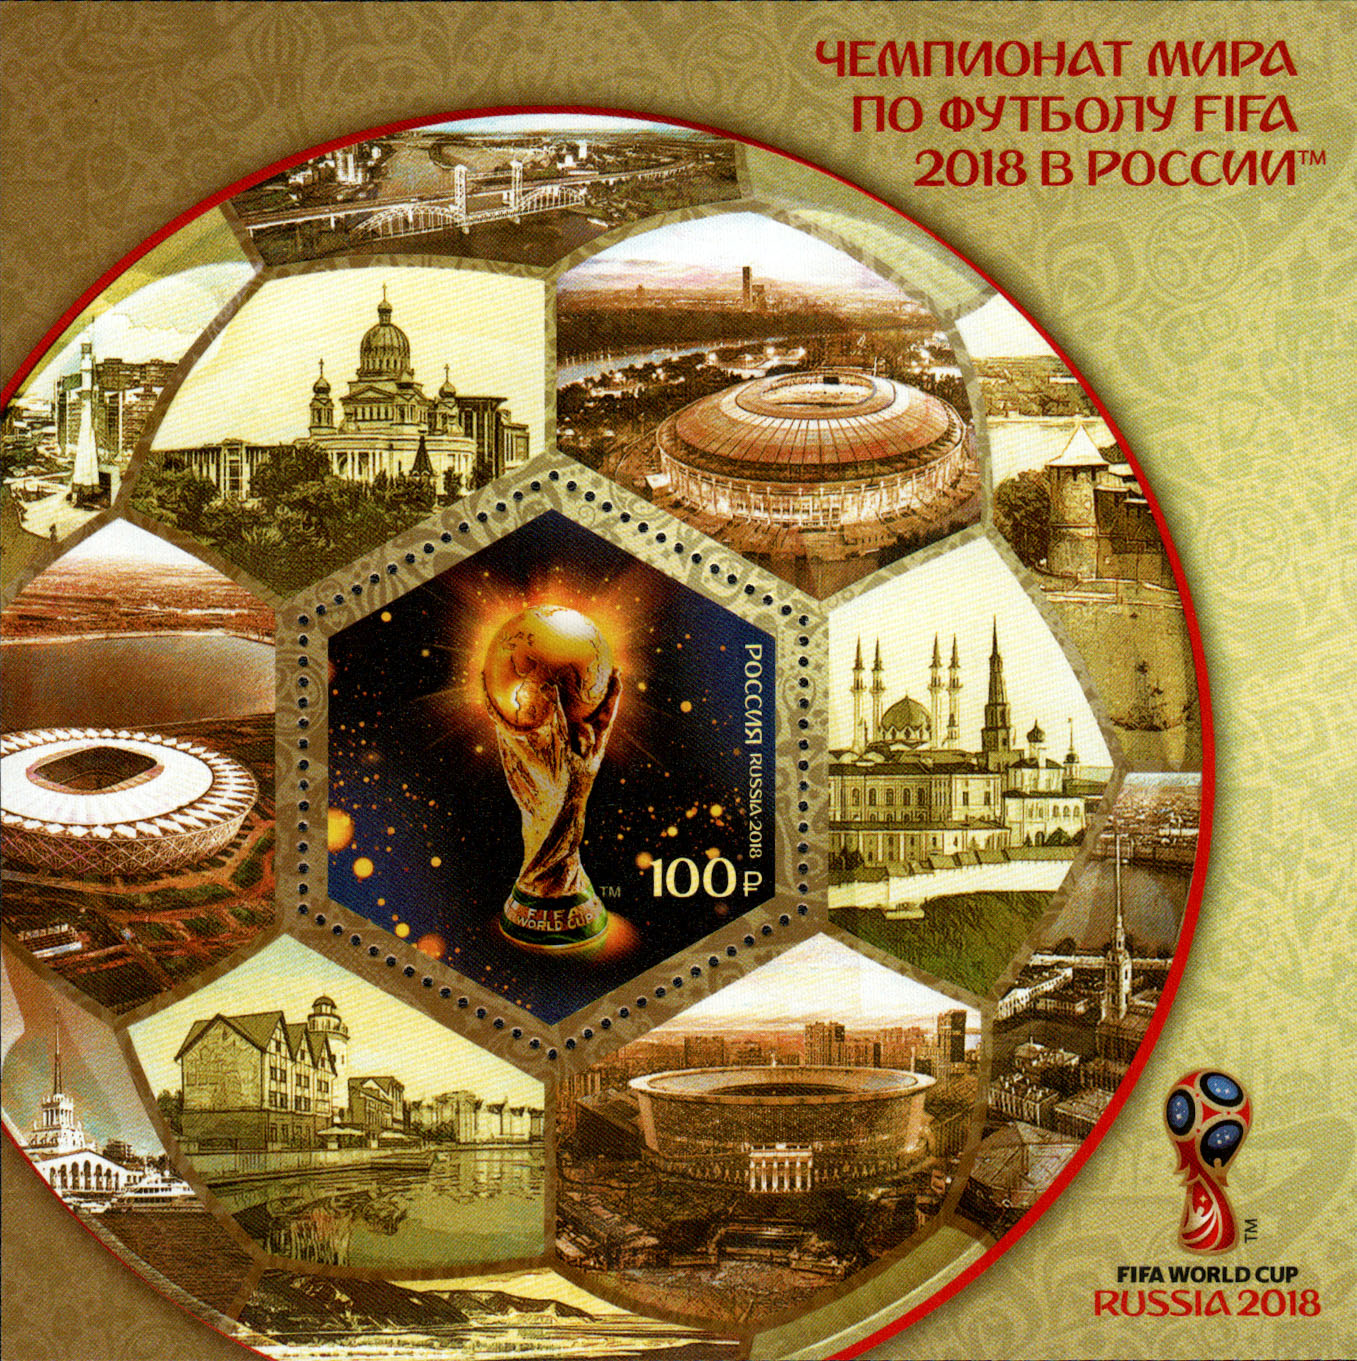 Чемпионат мира по футболу FIFA 2018     в России™. 14 июня – 15 июля 2018 г.